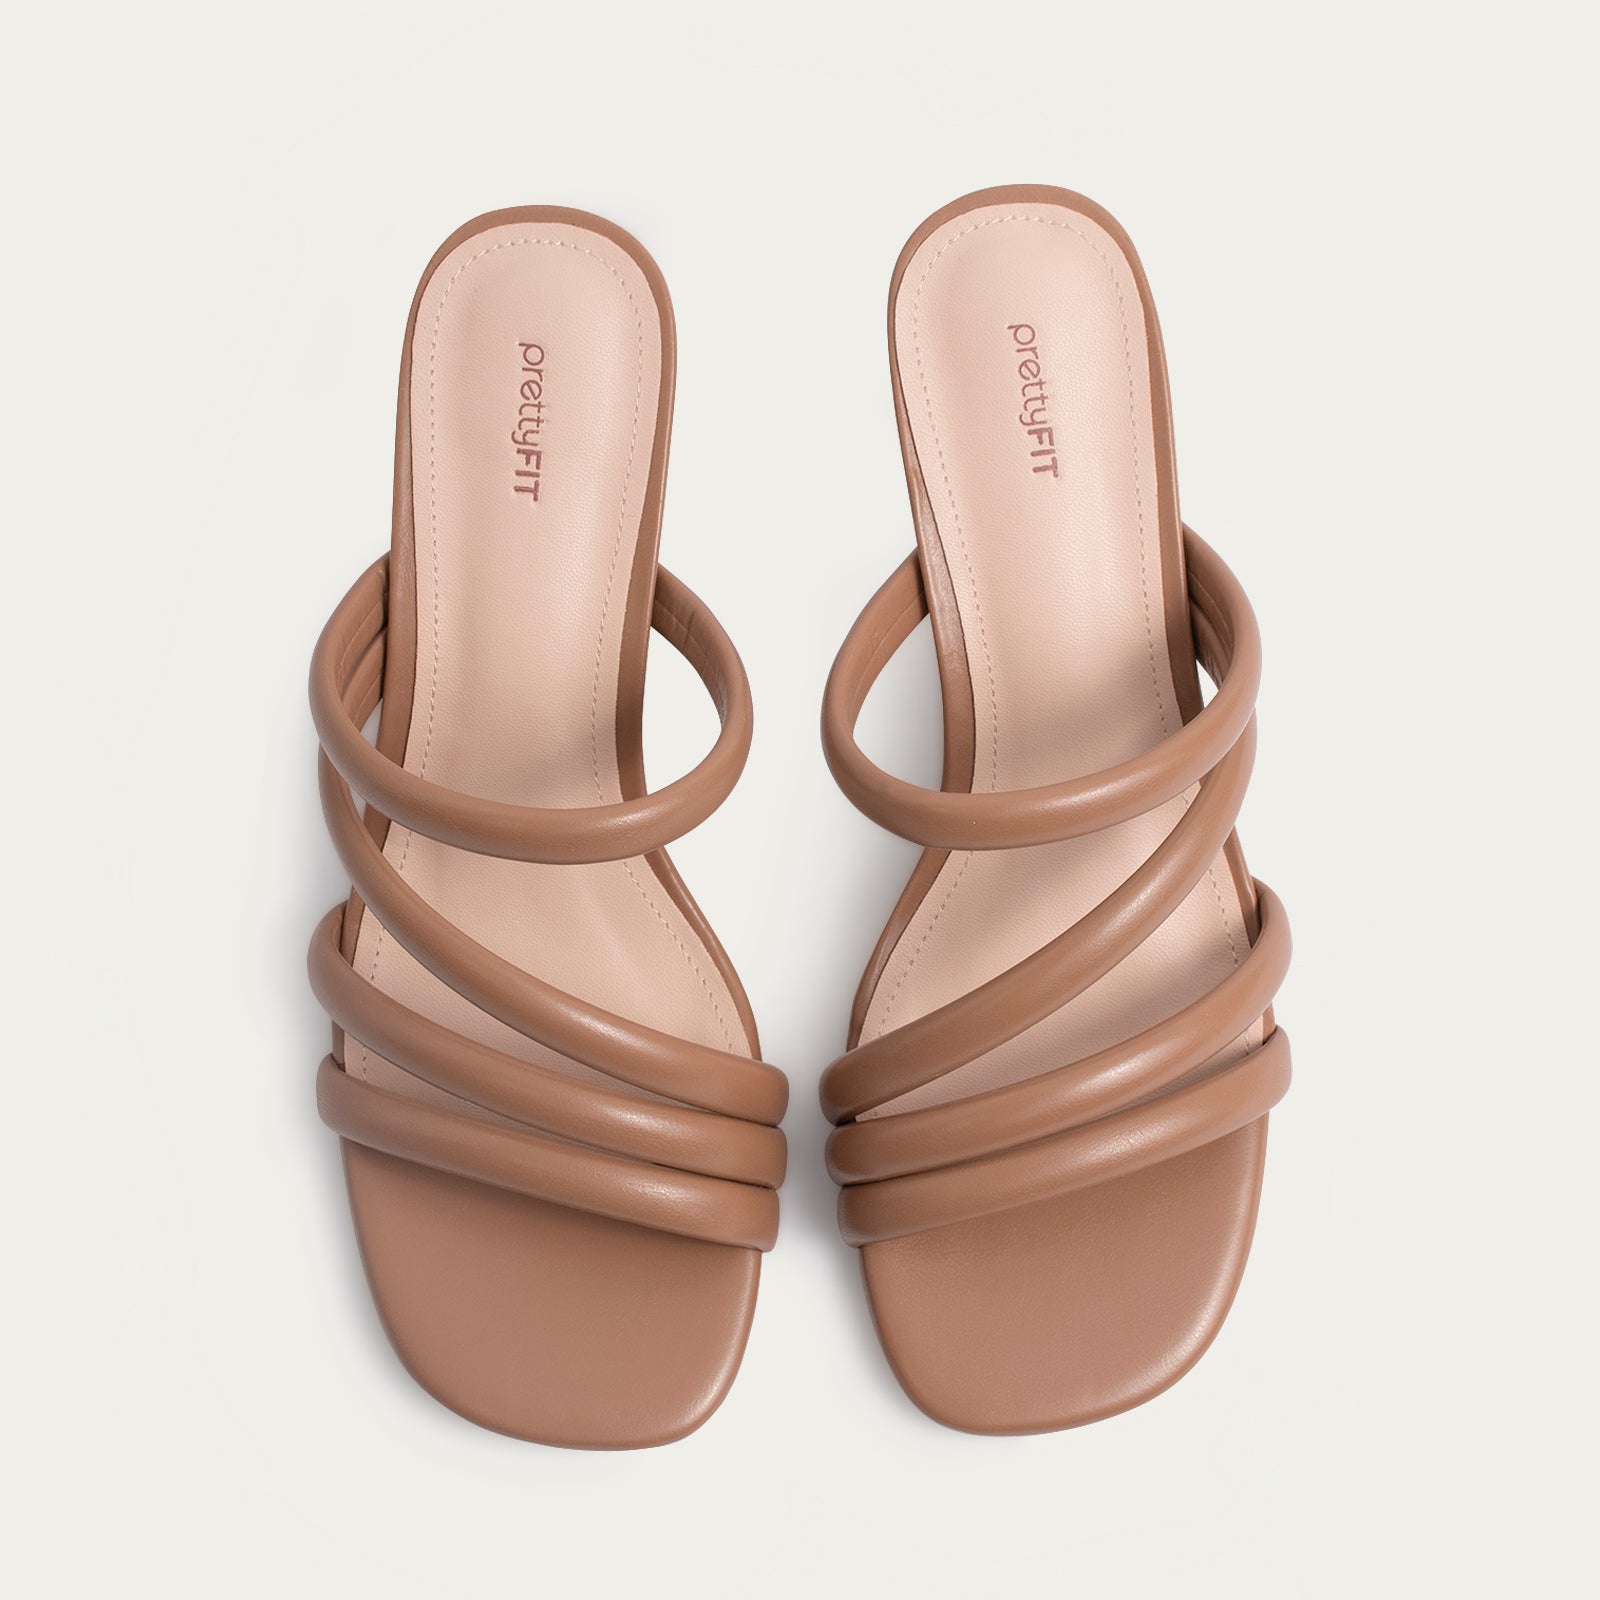 Tressie Sandals